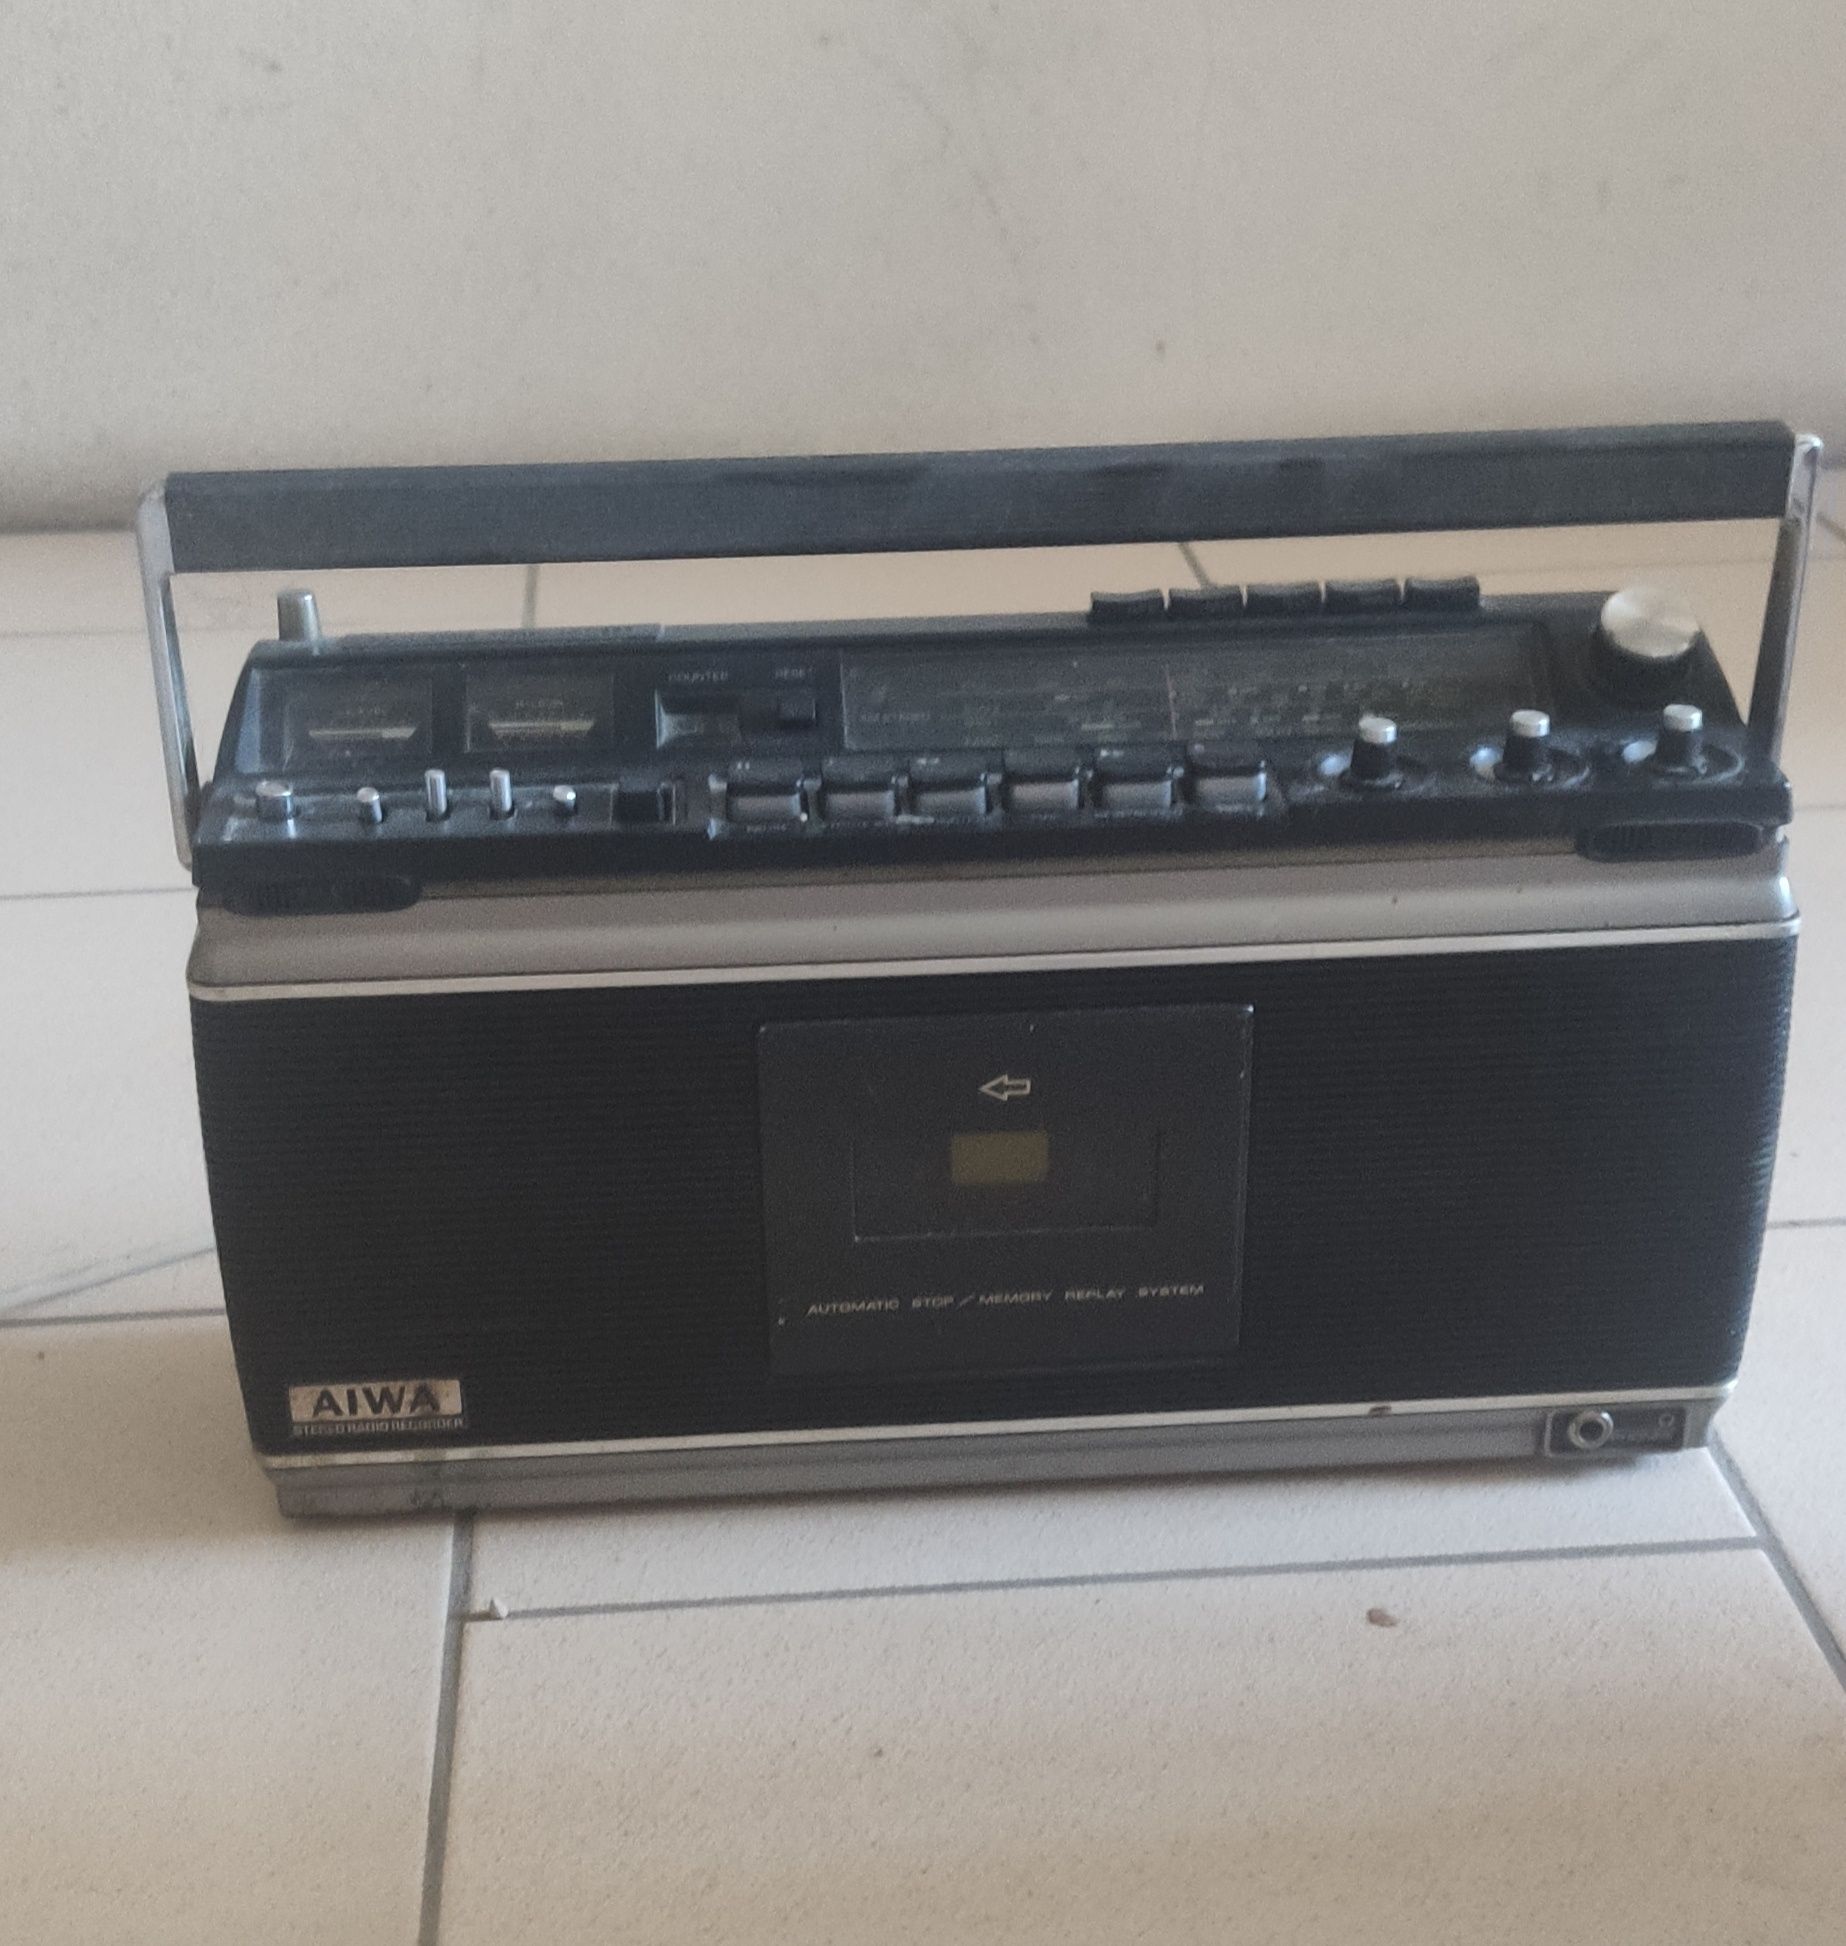 AIWA Radio Cassette Recorder Stereo TPR-930